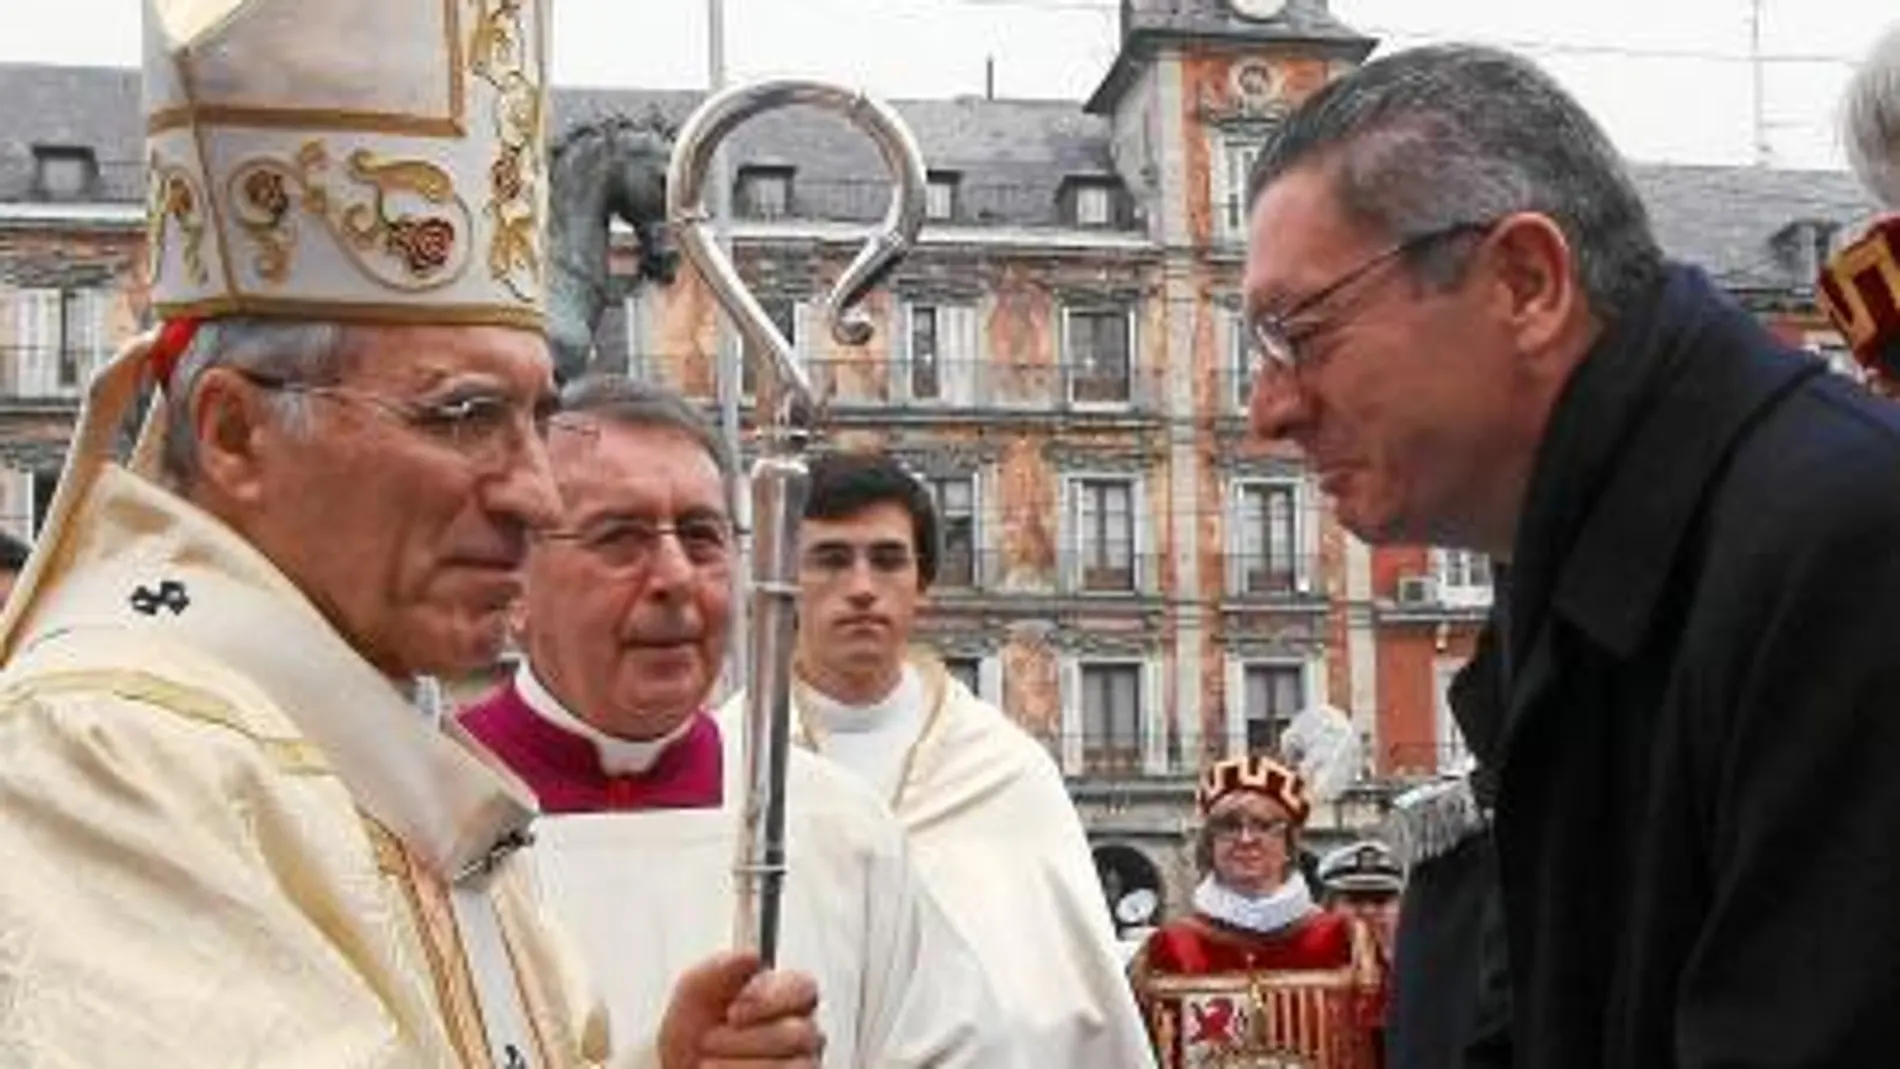 El alcalde de Madrid, Alberto Ruiz-Gallardón, saluda al arzobispo de Madrid Antonio María Rouco en la misa en honor a la patrona de Madrid